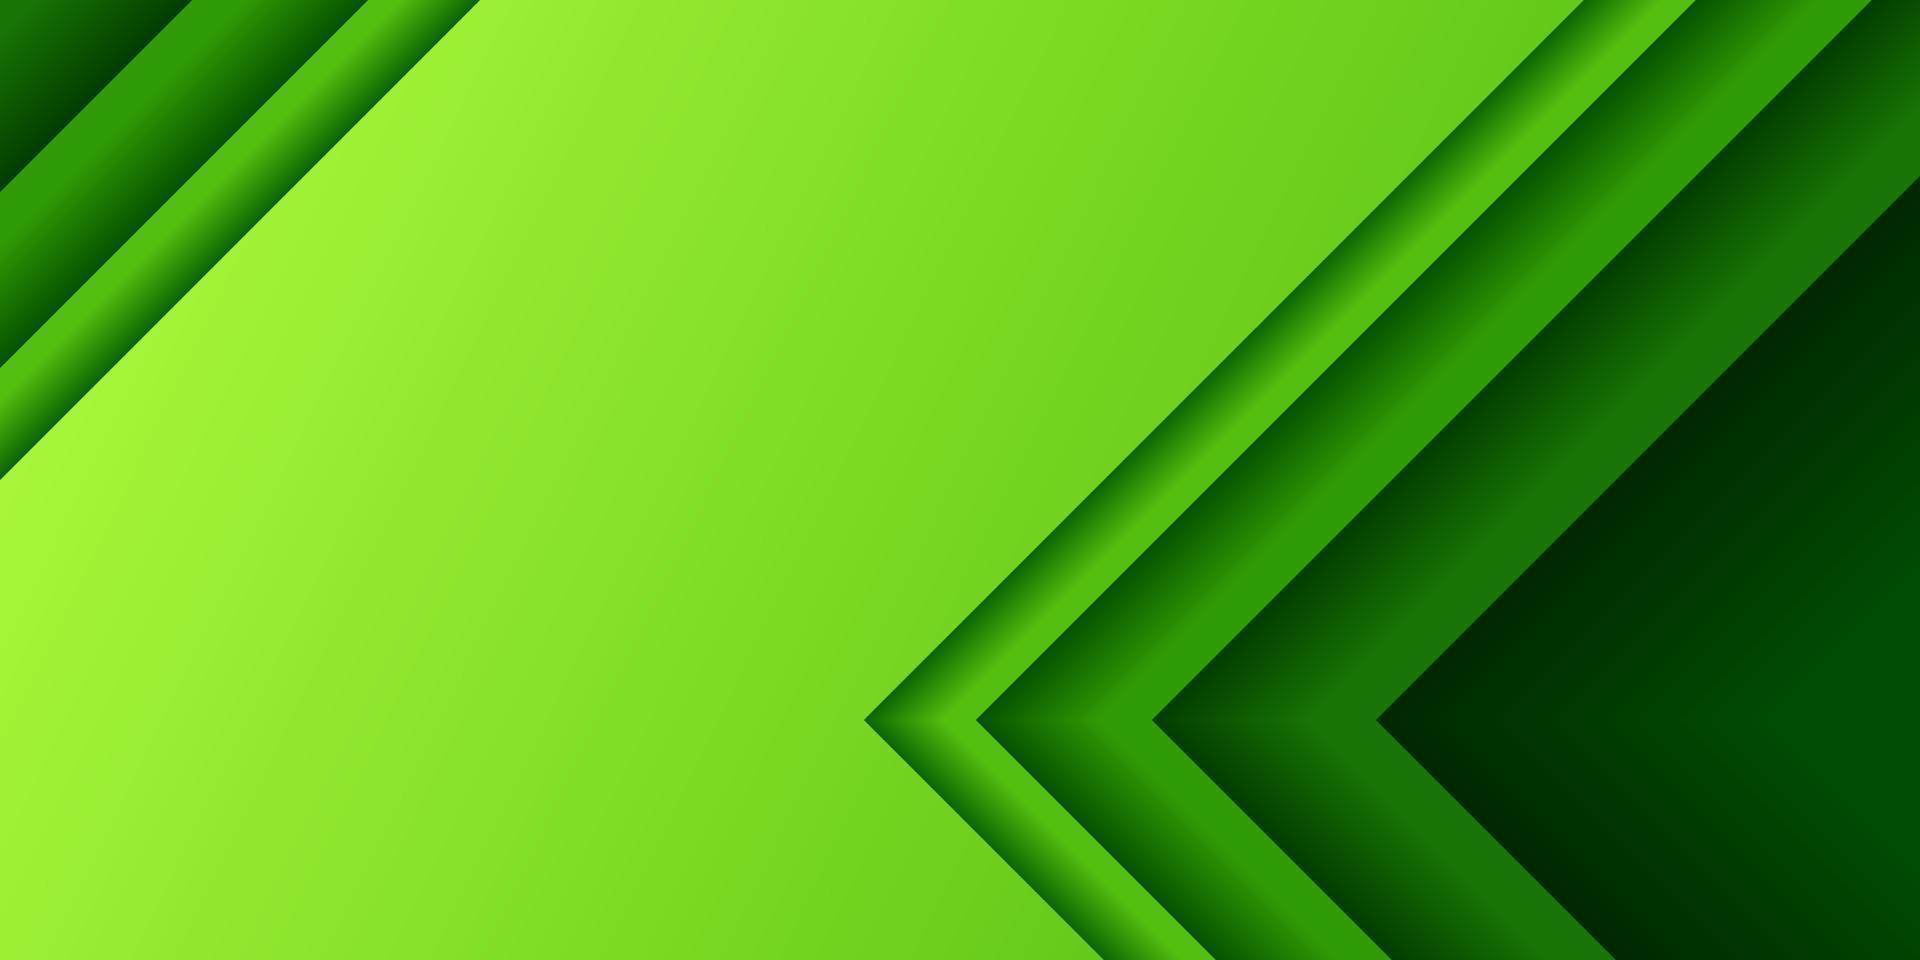 grüner papierschnitt rechtwinkliger farbverlauf abstrakter hintergrund vektor